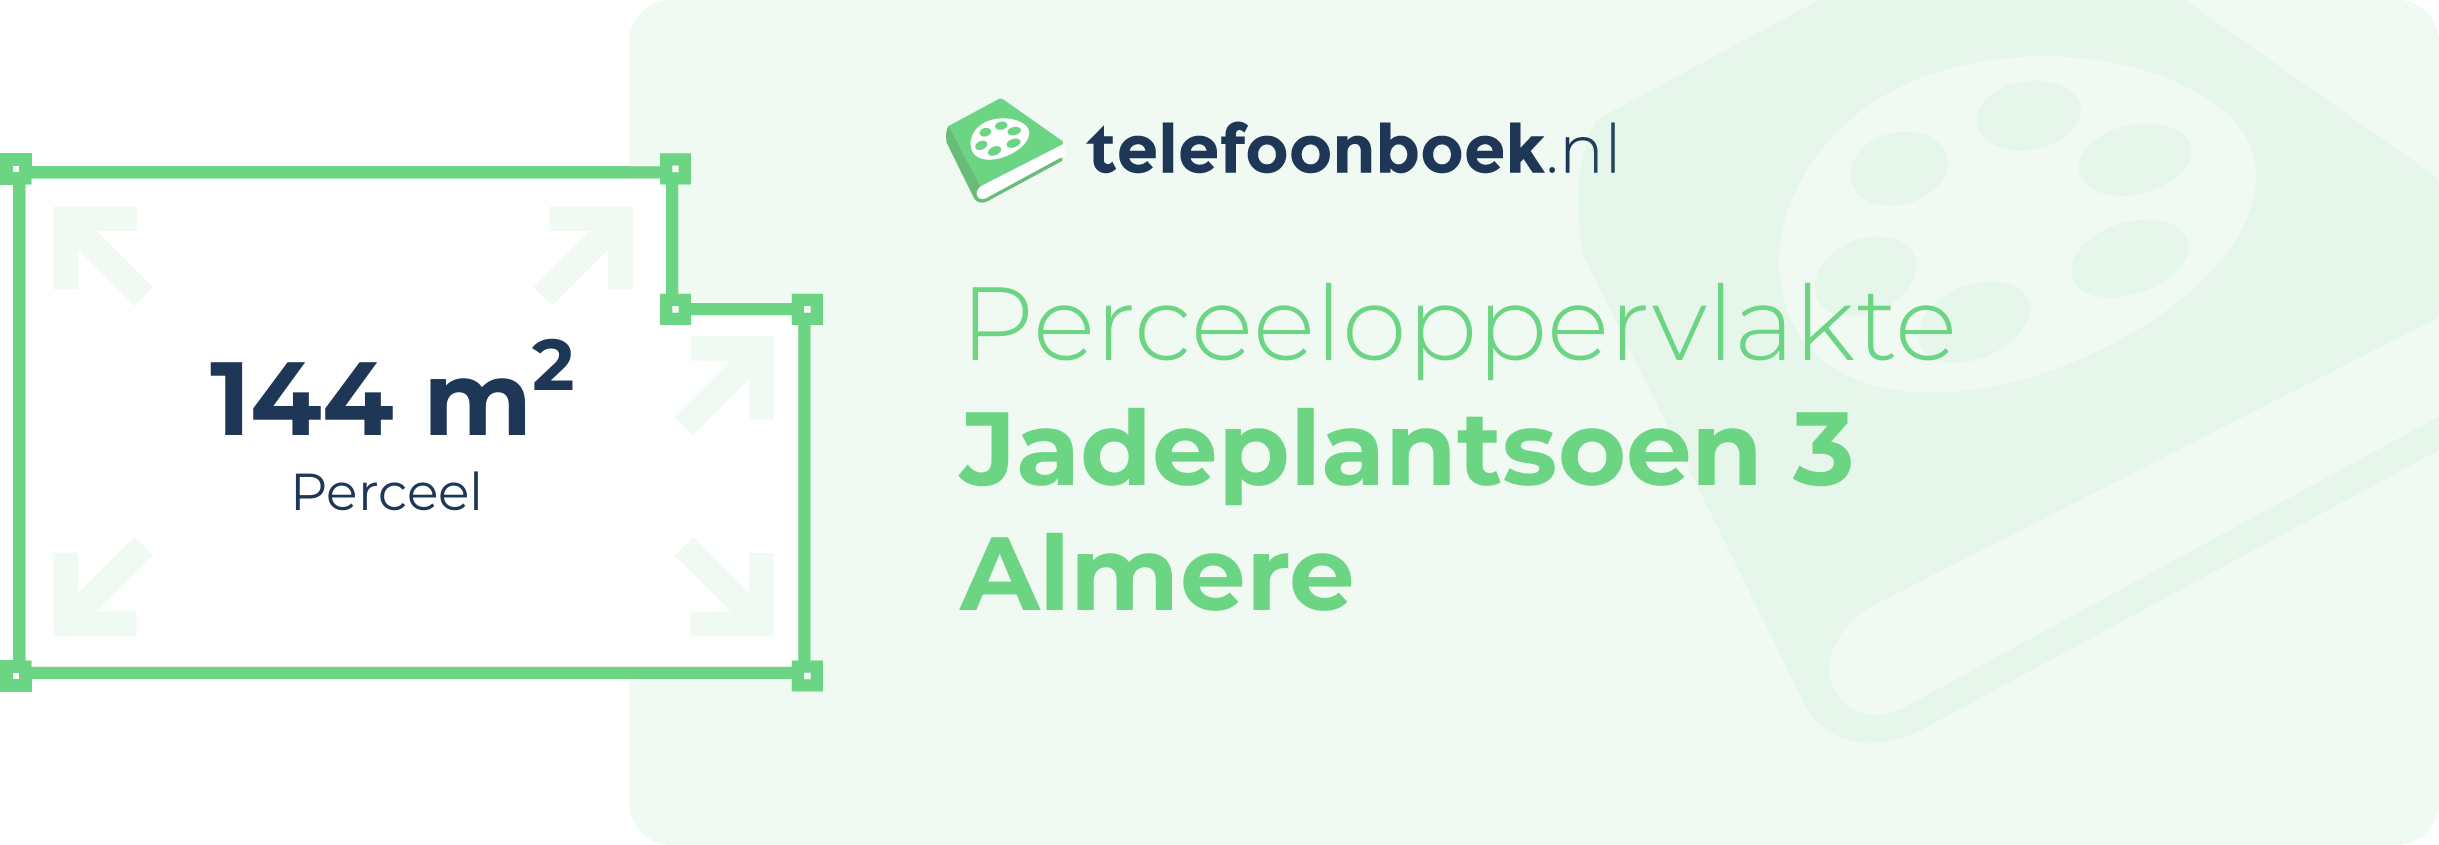 Perceeloppervlakte Jadeplantsoen 3 Almere